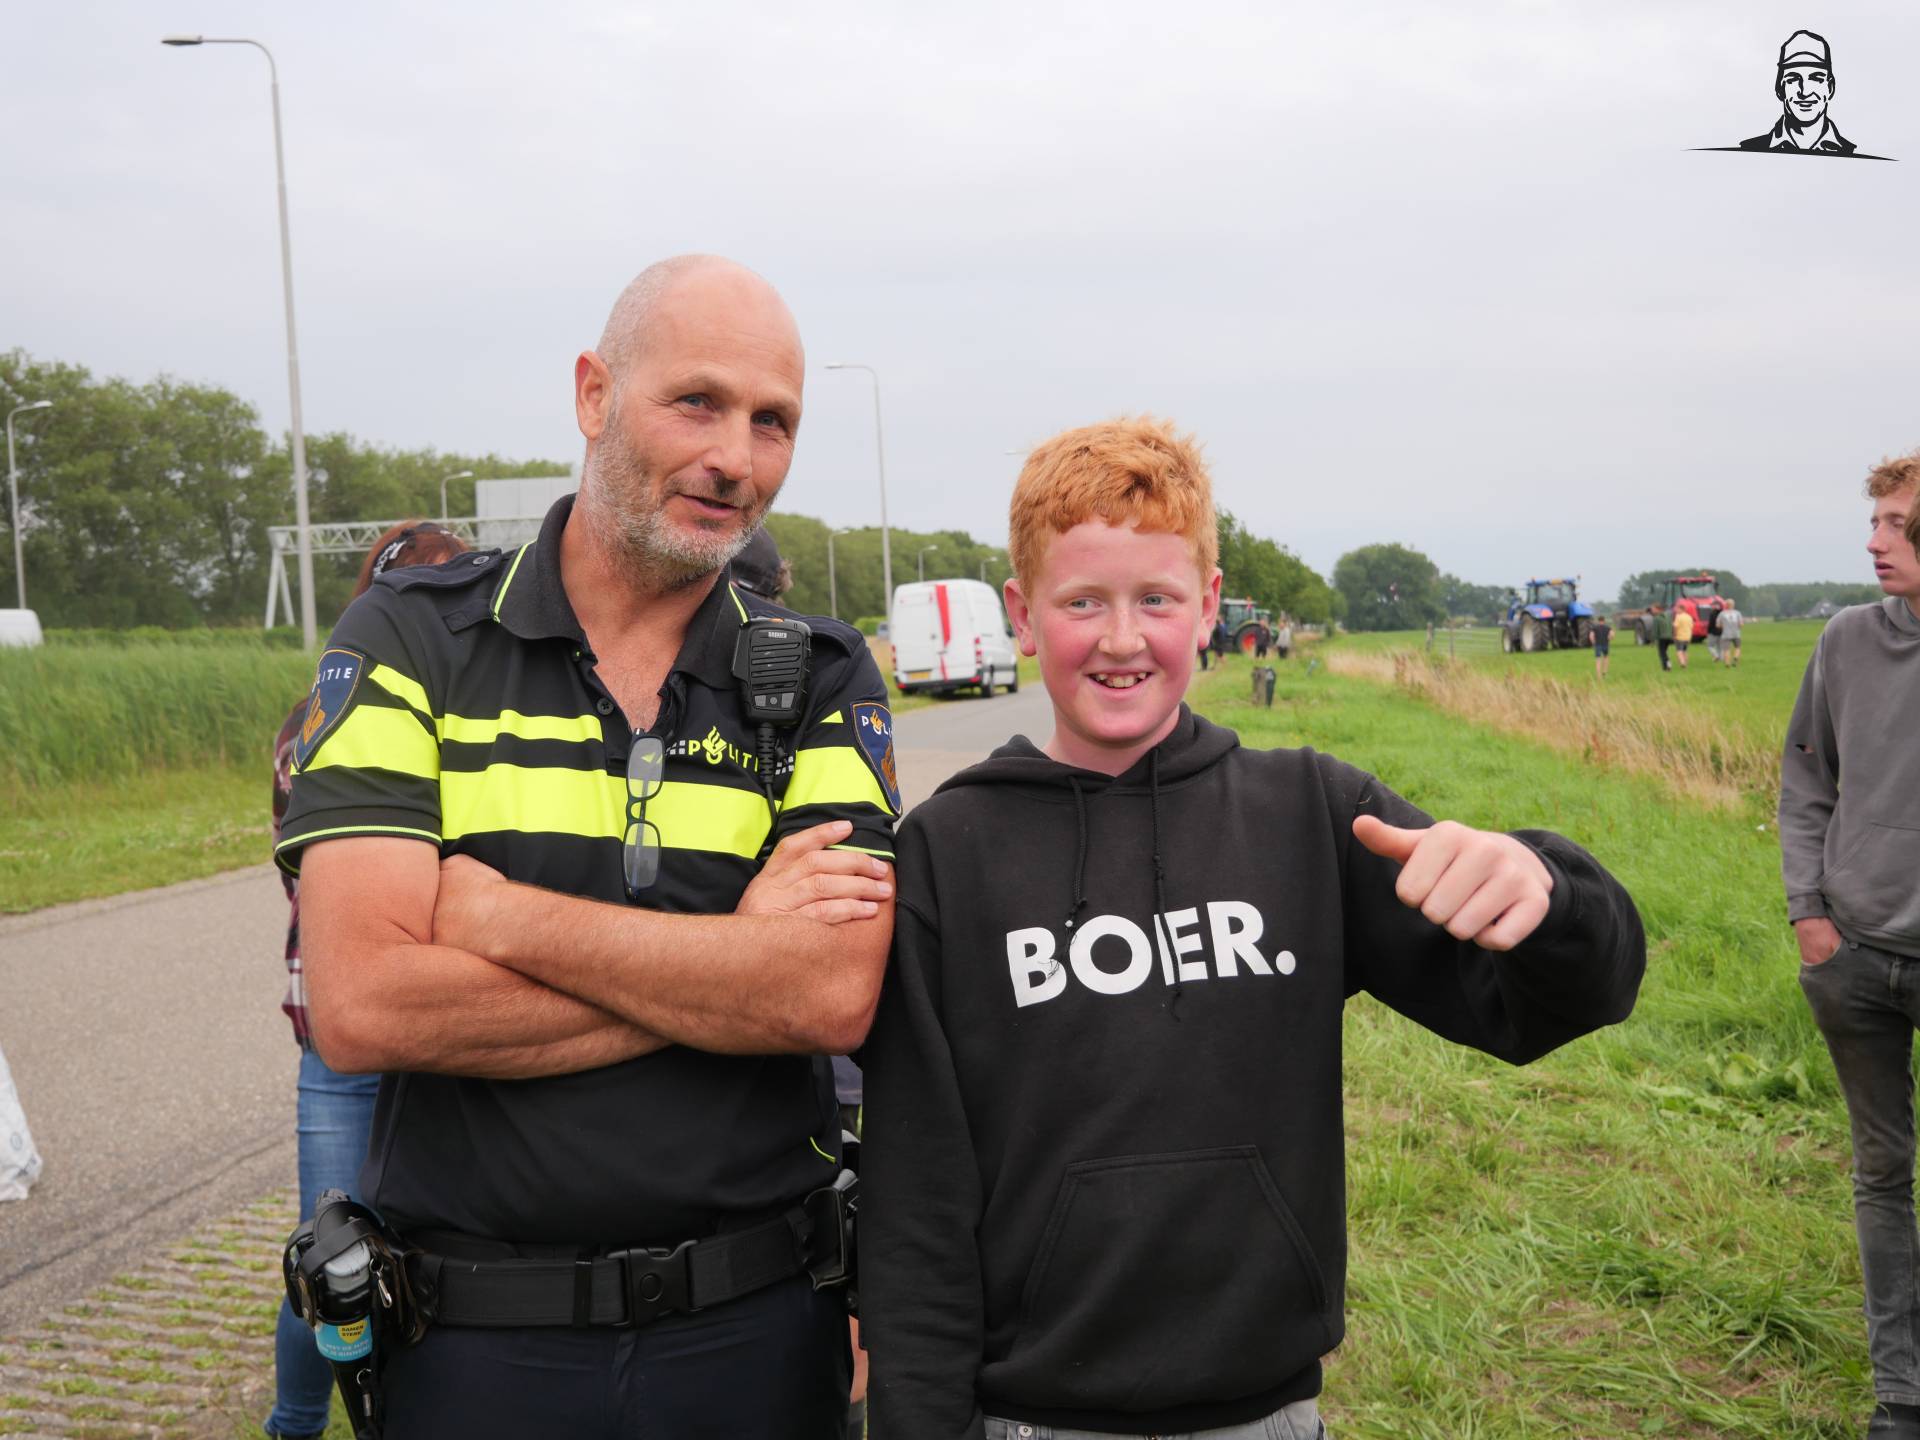 Boerenprotest - Rookgordijn - A7 - Hoorn - politie - brandweer van Grasbaal